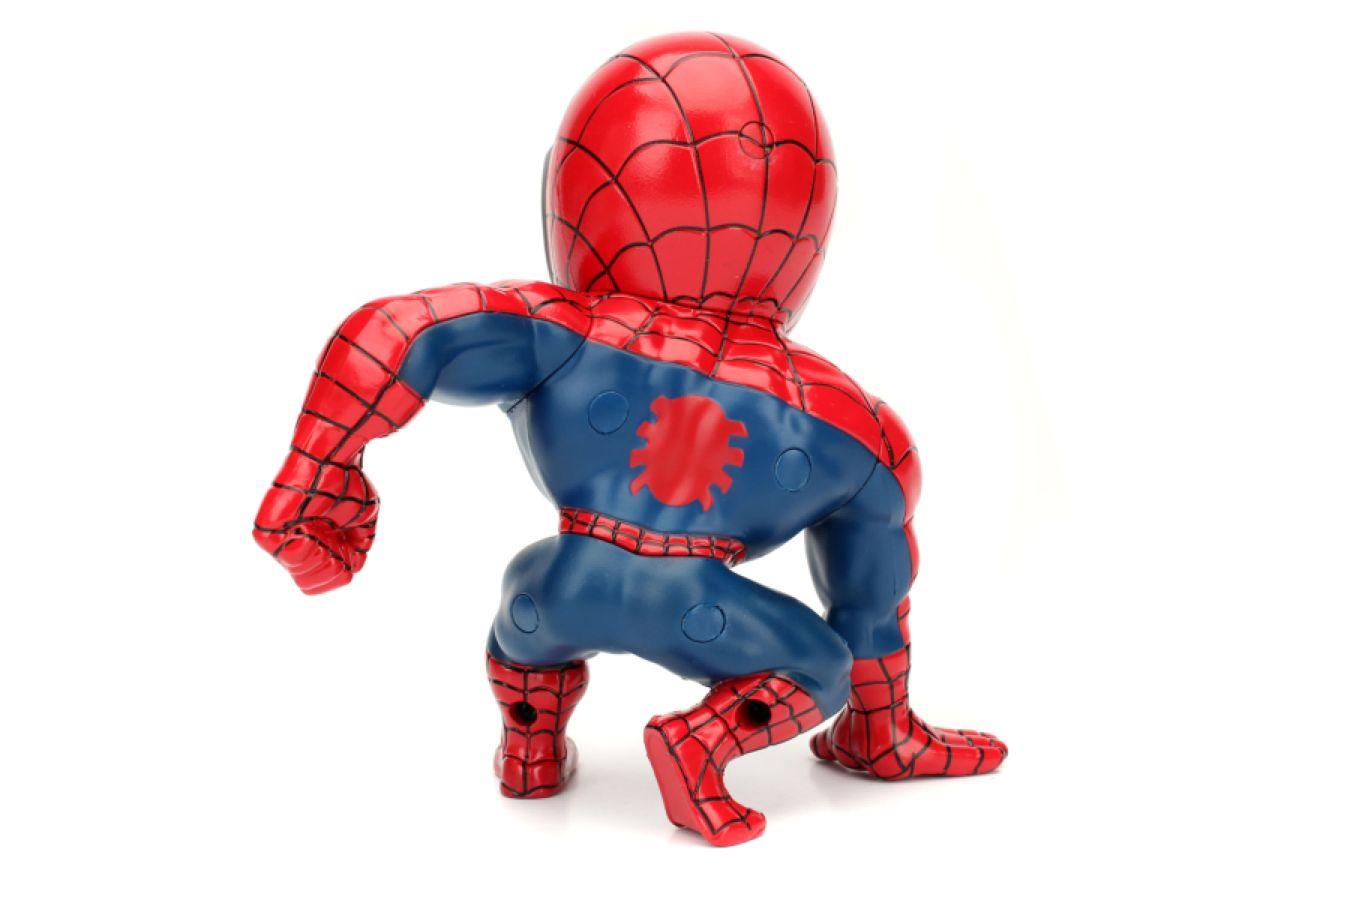 JAD97984 Spider-Man (comics) - Ultimate Spider-Man 6" Metals - Jada Toys - Titan Pop Culture